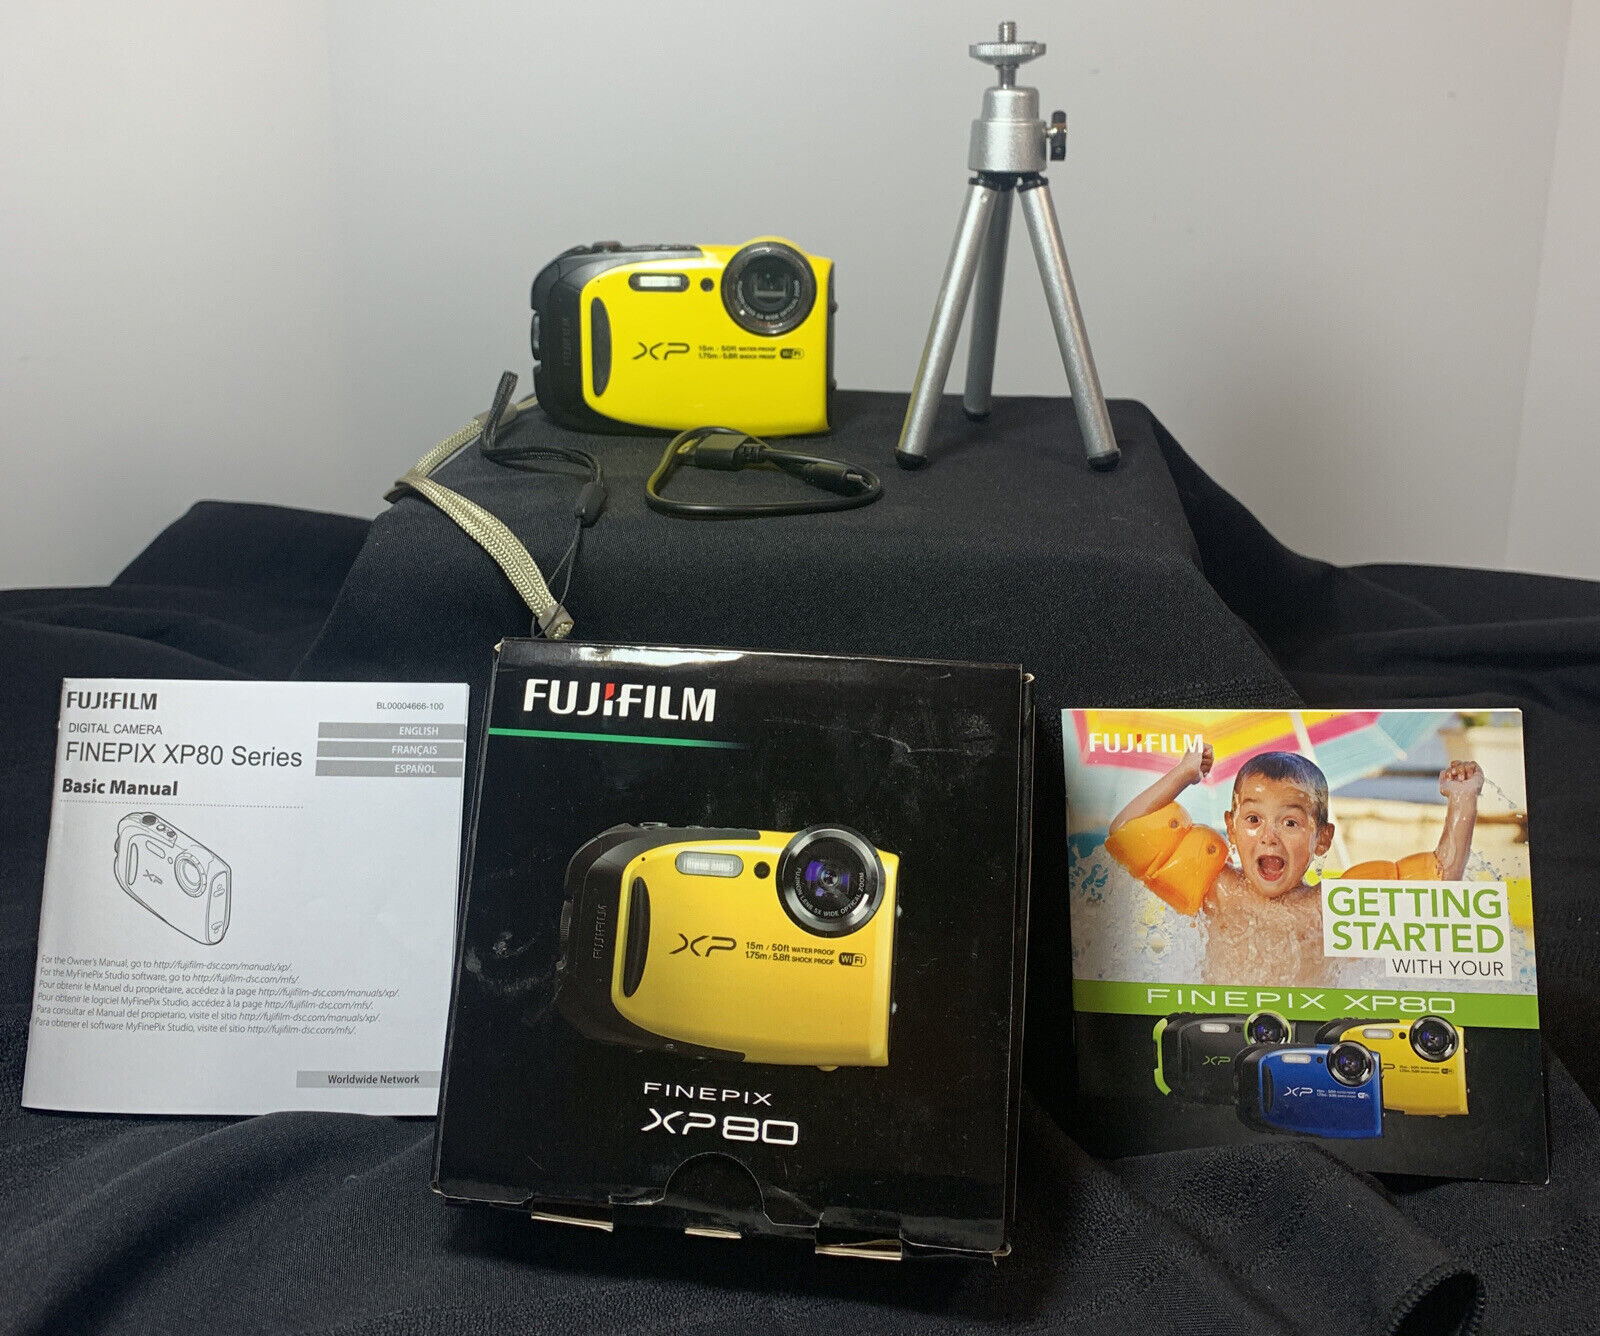 Tutor Metalen lijn boerderij FujiFilm XP80 16.4MP Yellow Waterproof Shockproof Digital Camera and mini  tripod | eBay